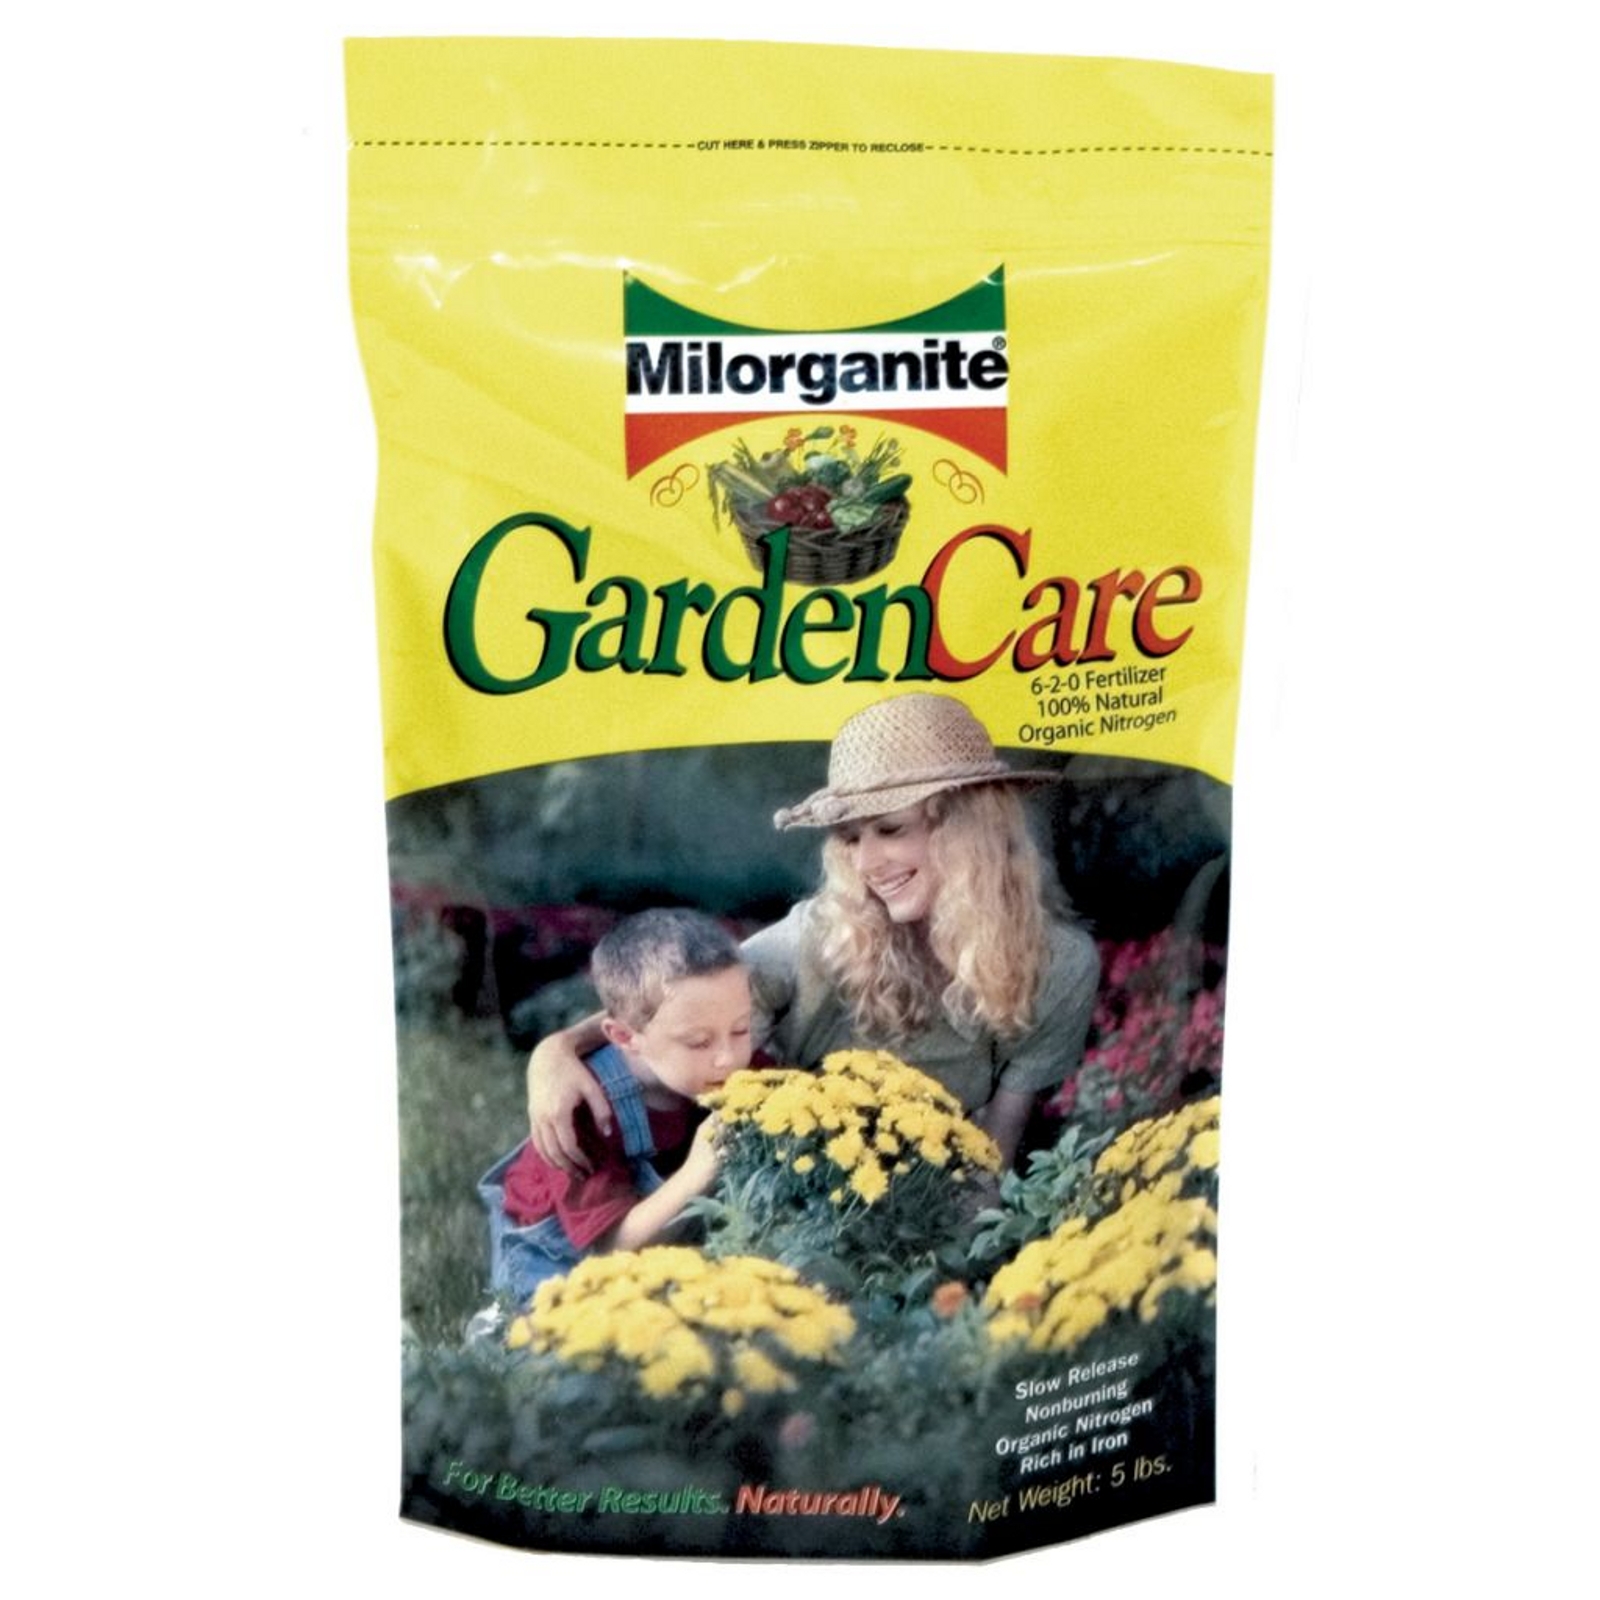 MILORGANITE MIL0605 Fertilizer 6-2-0 - 5 pound